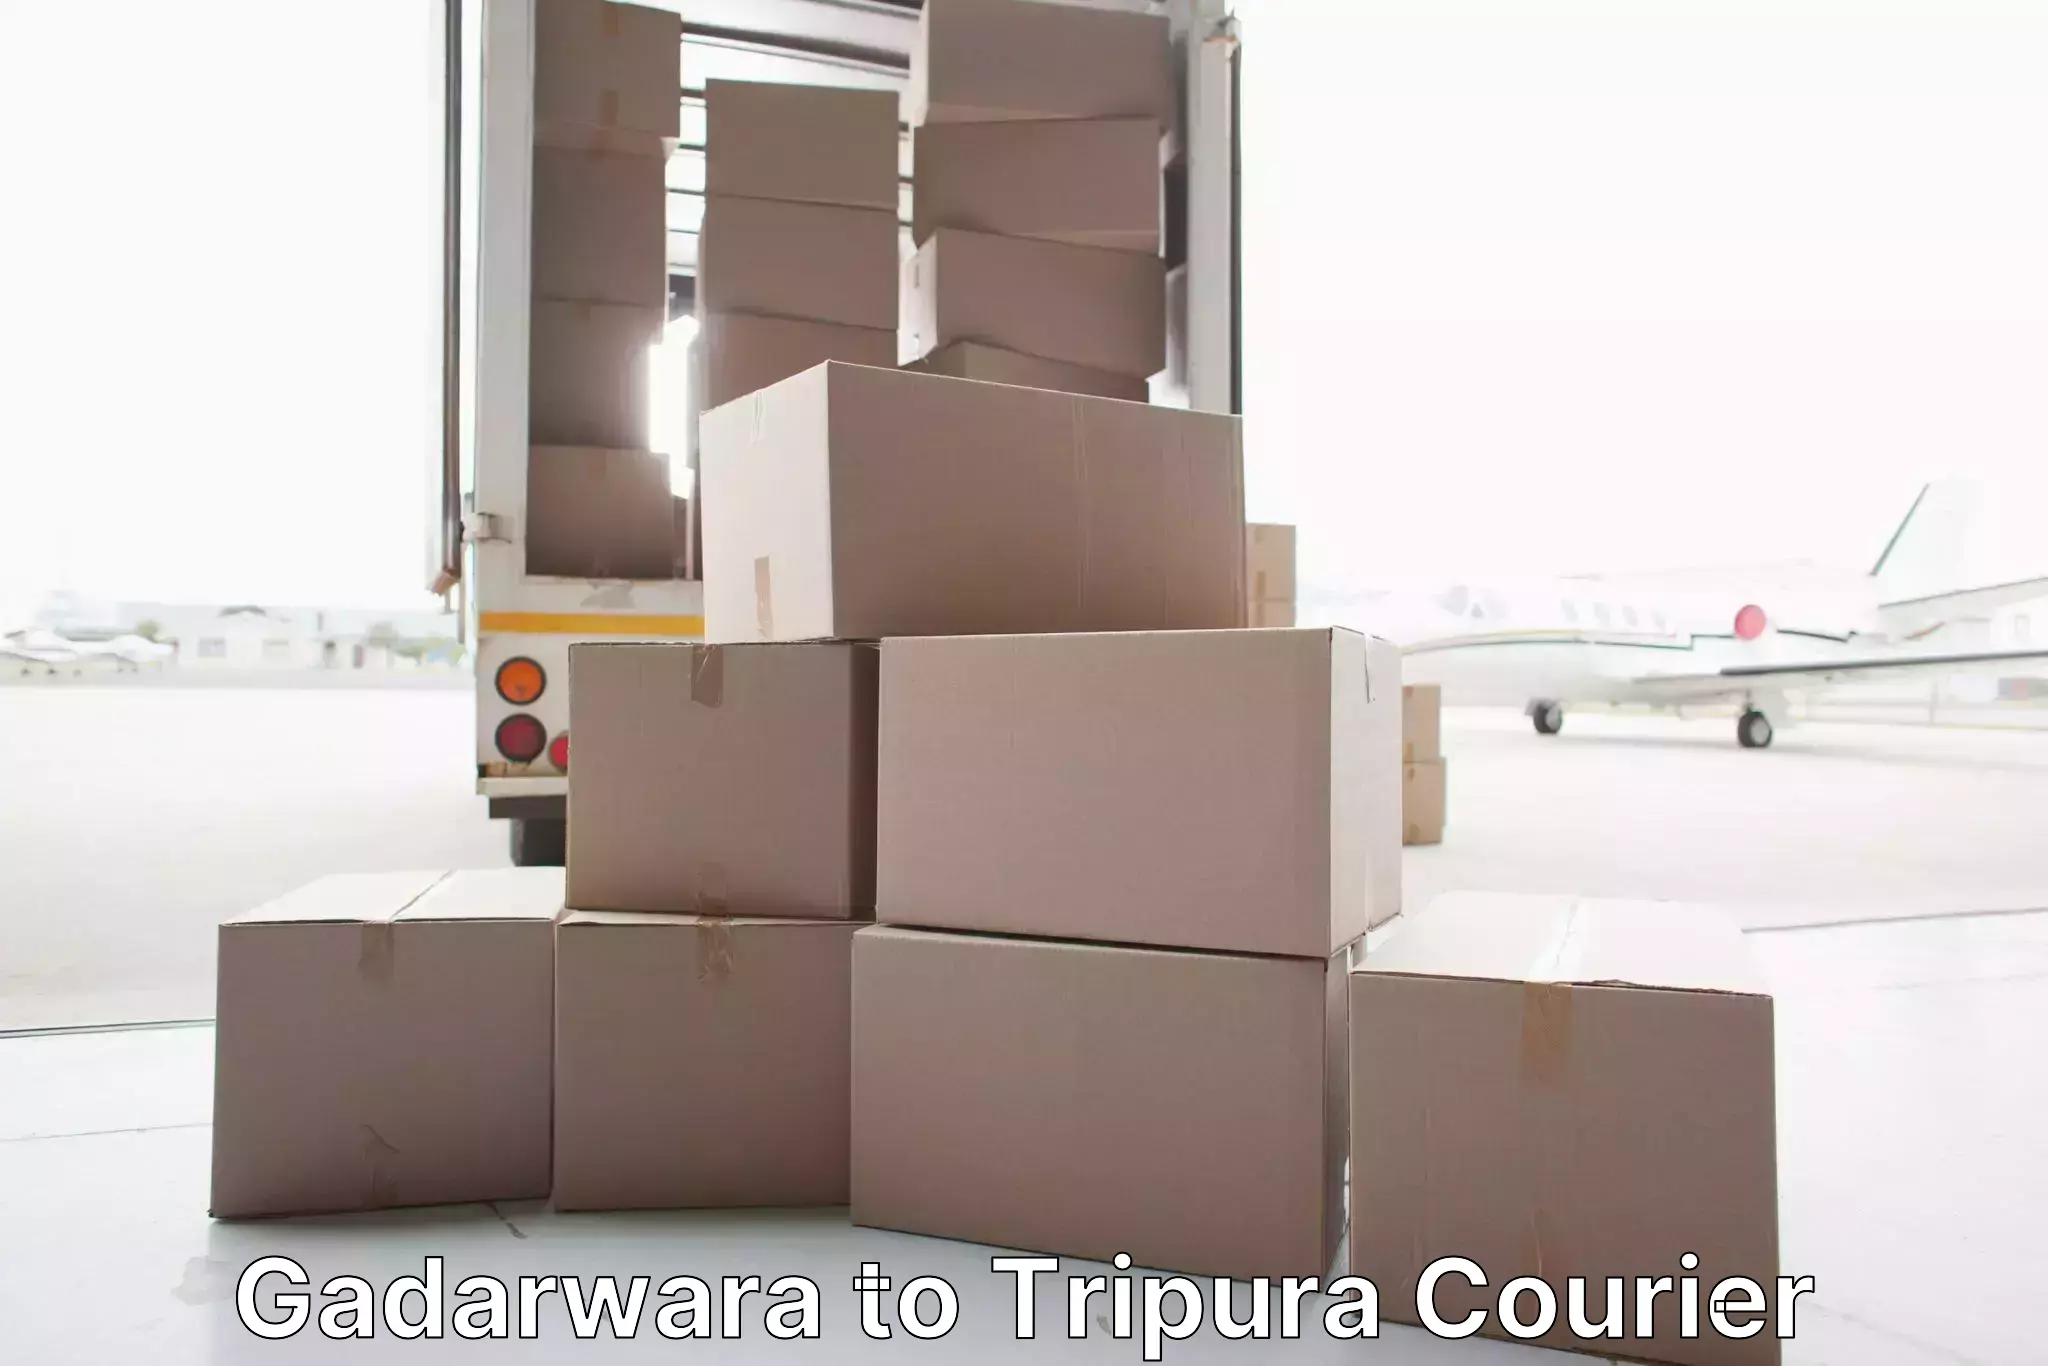 Residential moving experts Gadarwara to Tripura